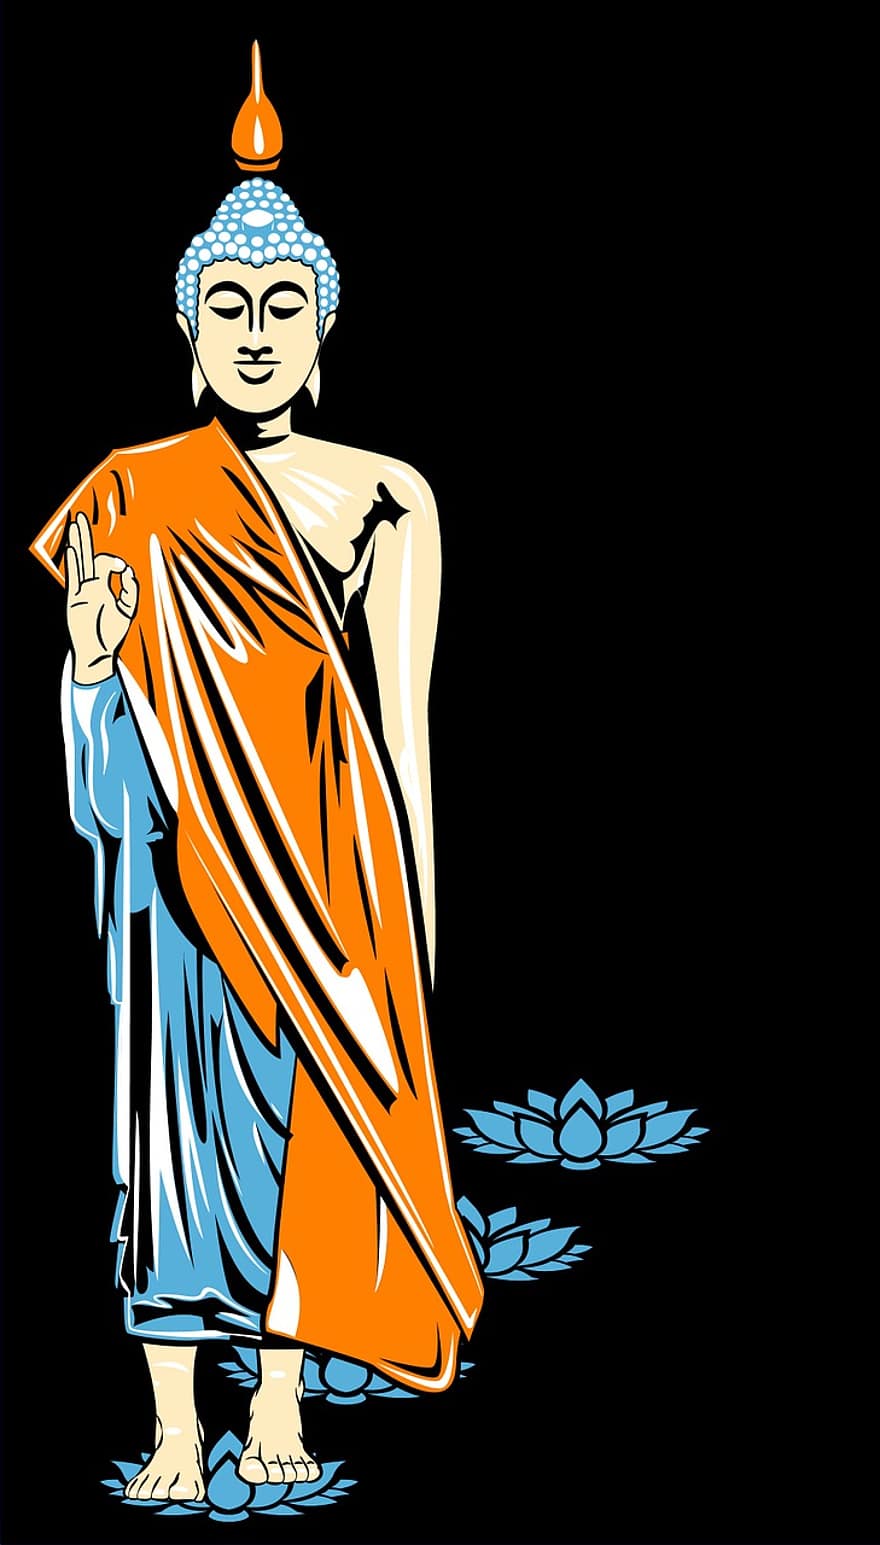 Budda, obraz, sitodruk, buddyzm, Amid, lotos, kwiat lotosu, Wschód, zen, medytacja, joga